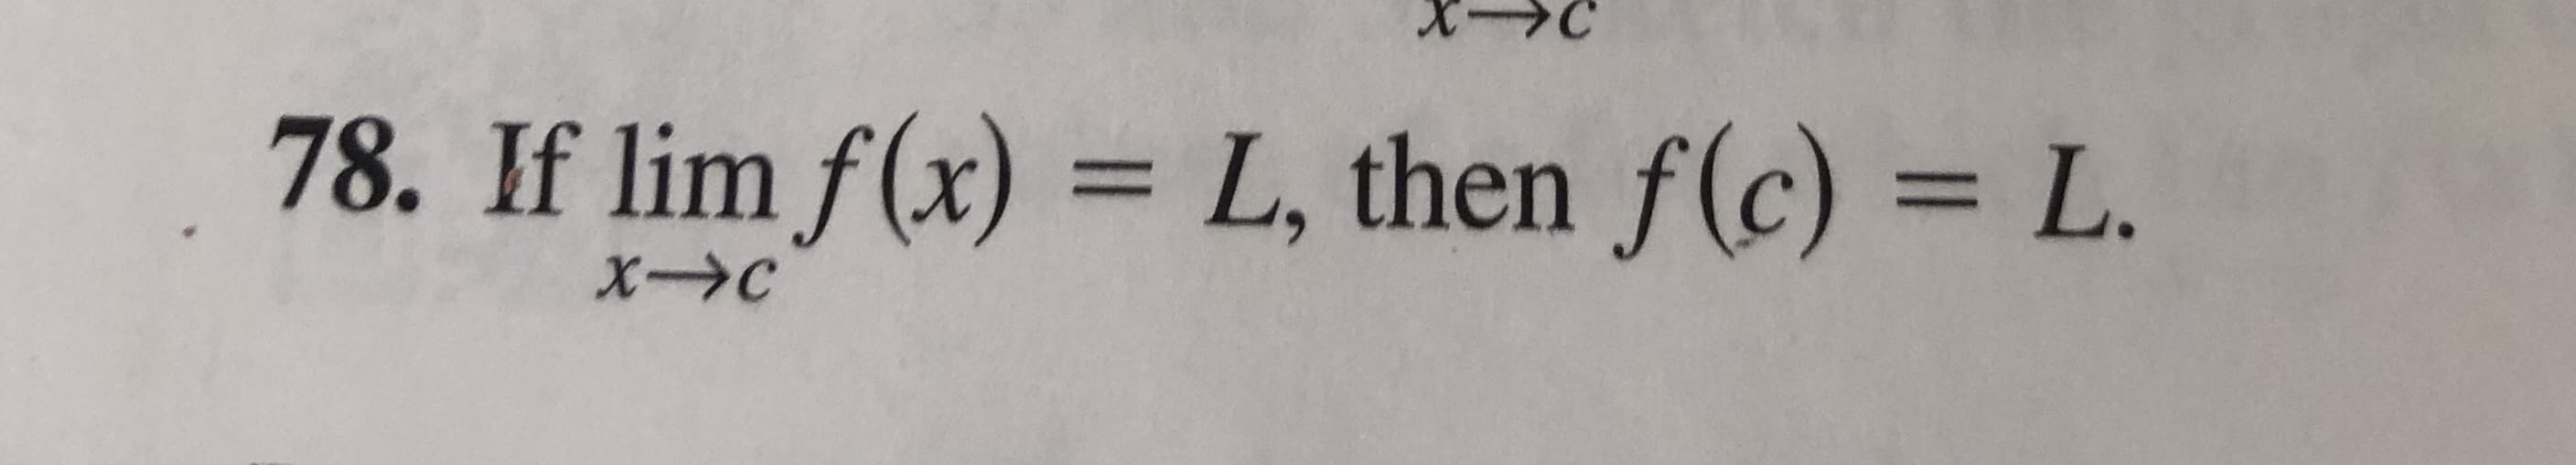 If lim f(x) = L, then f(c) = L.
XC
